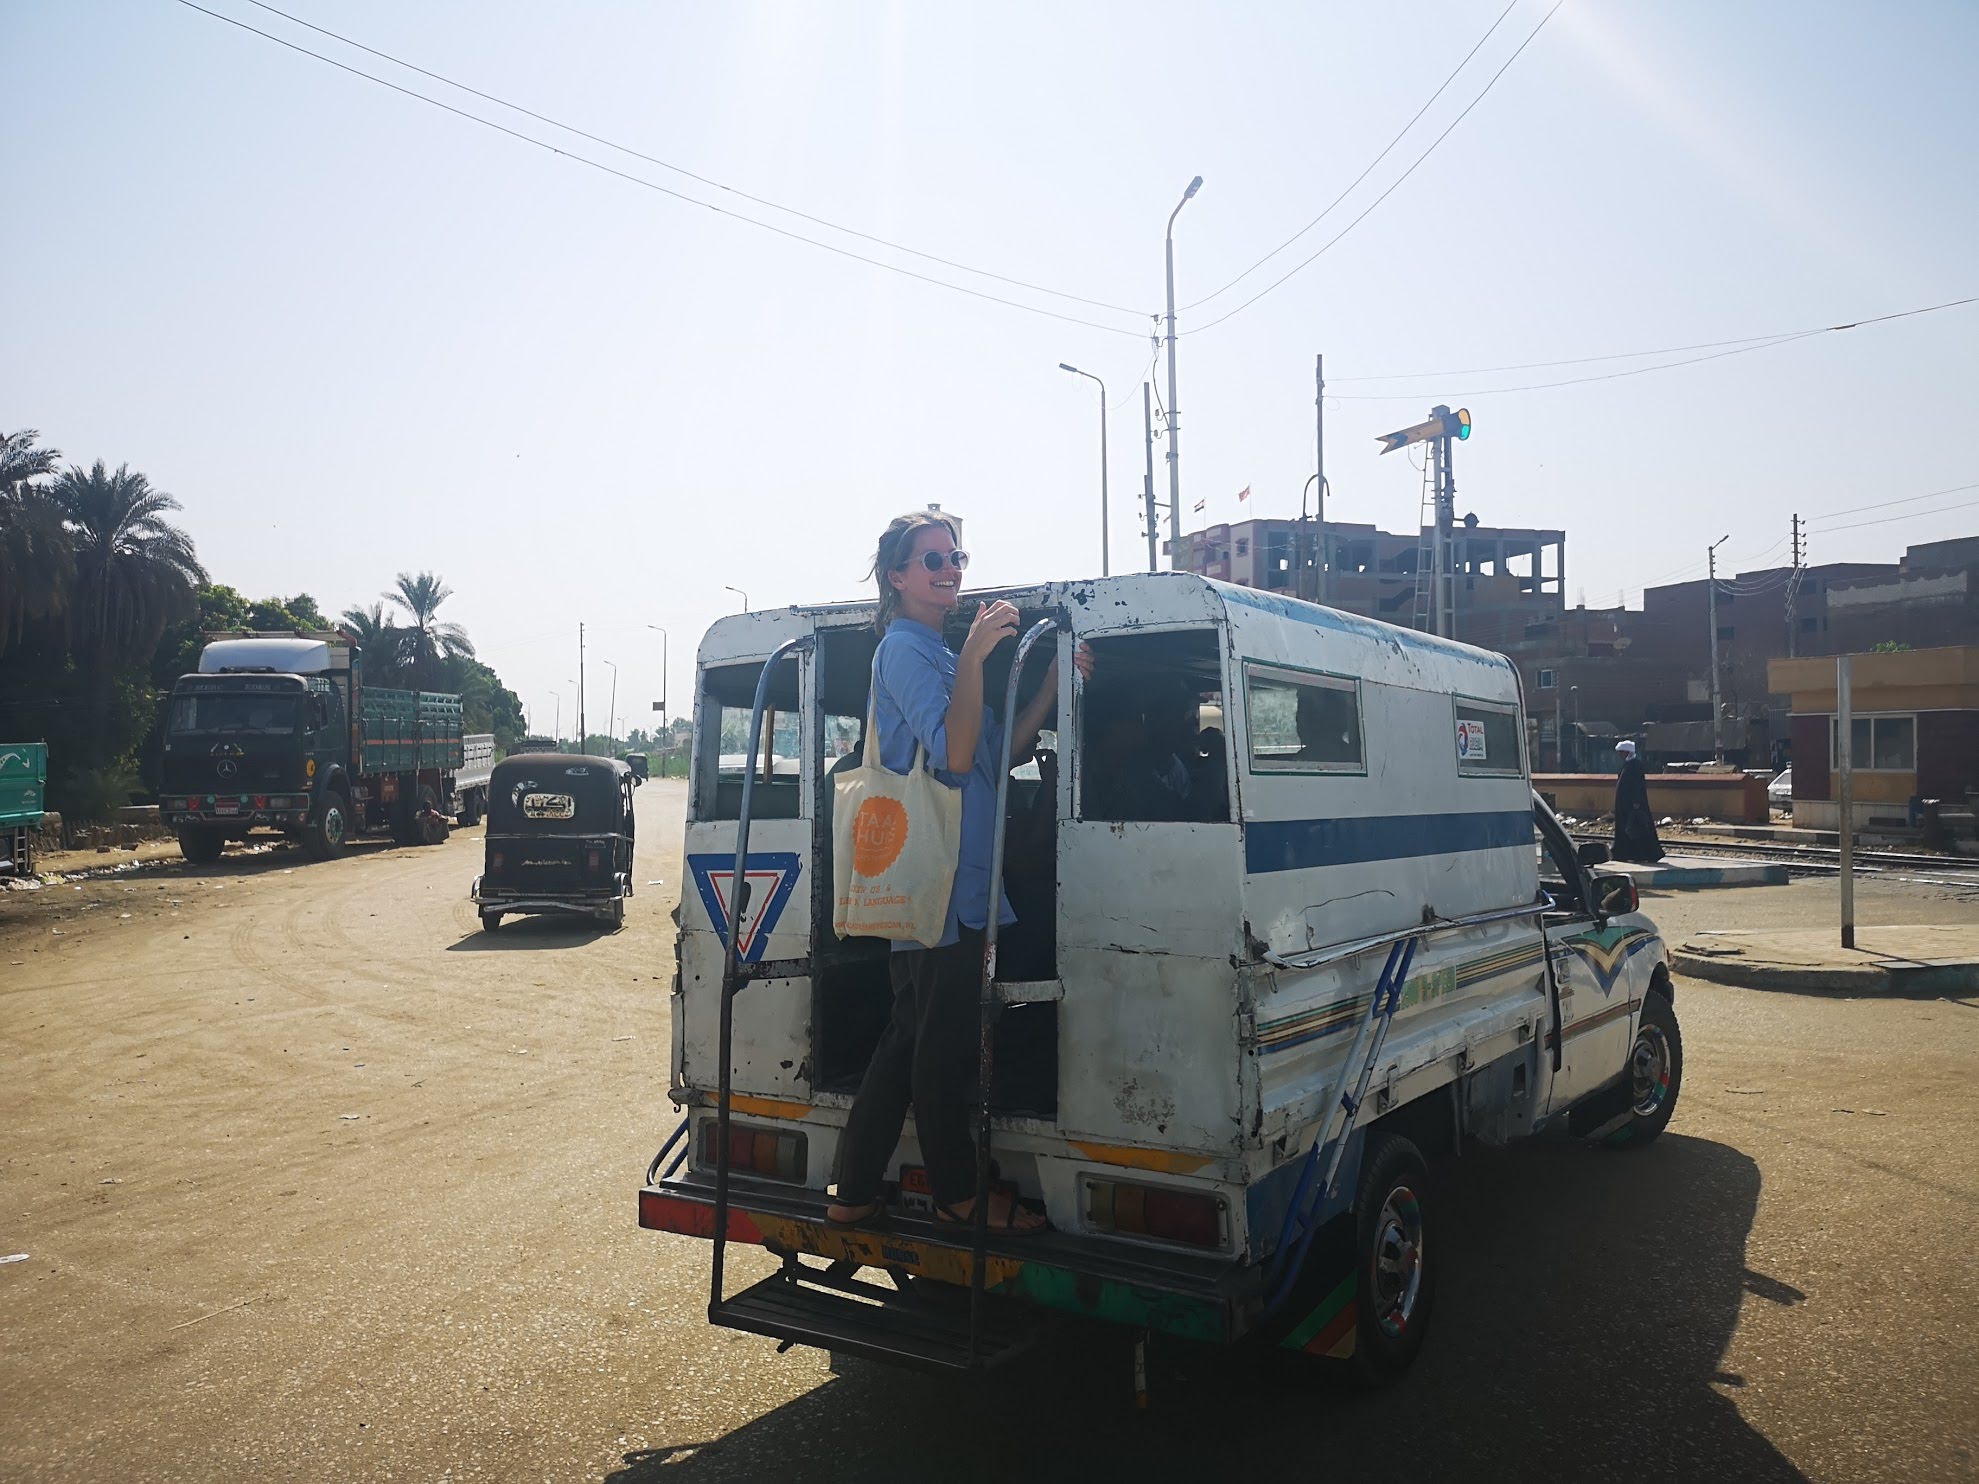 myrte busje egypte 2019